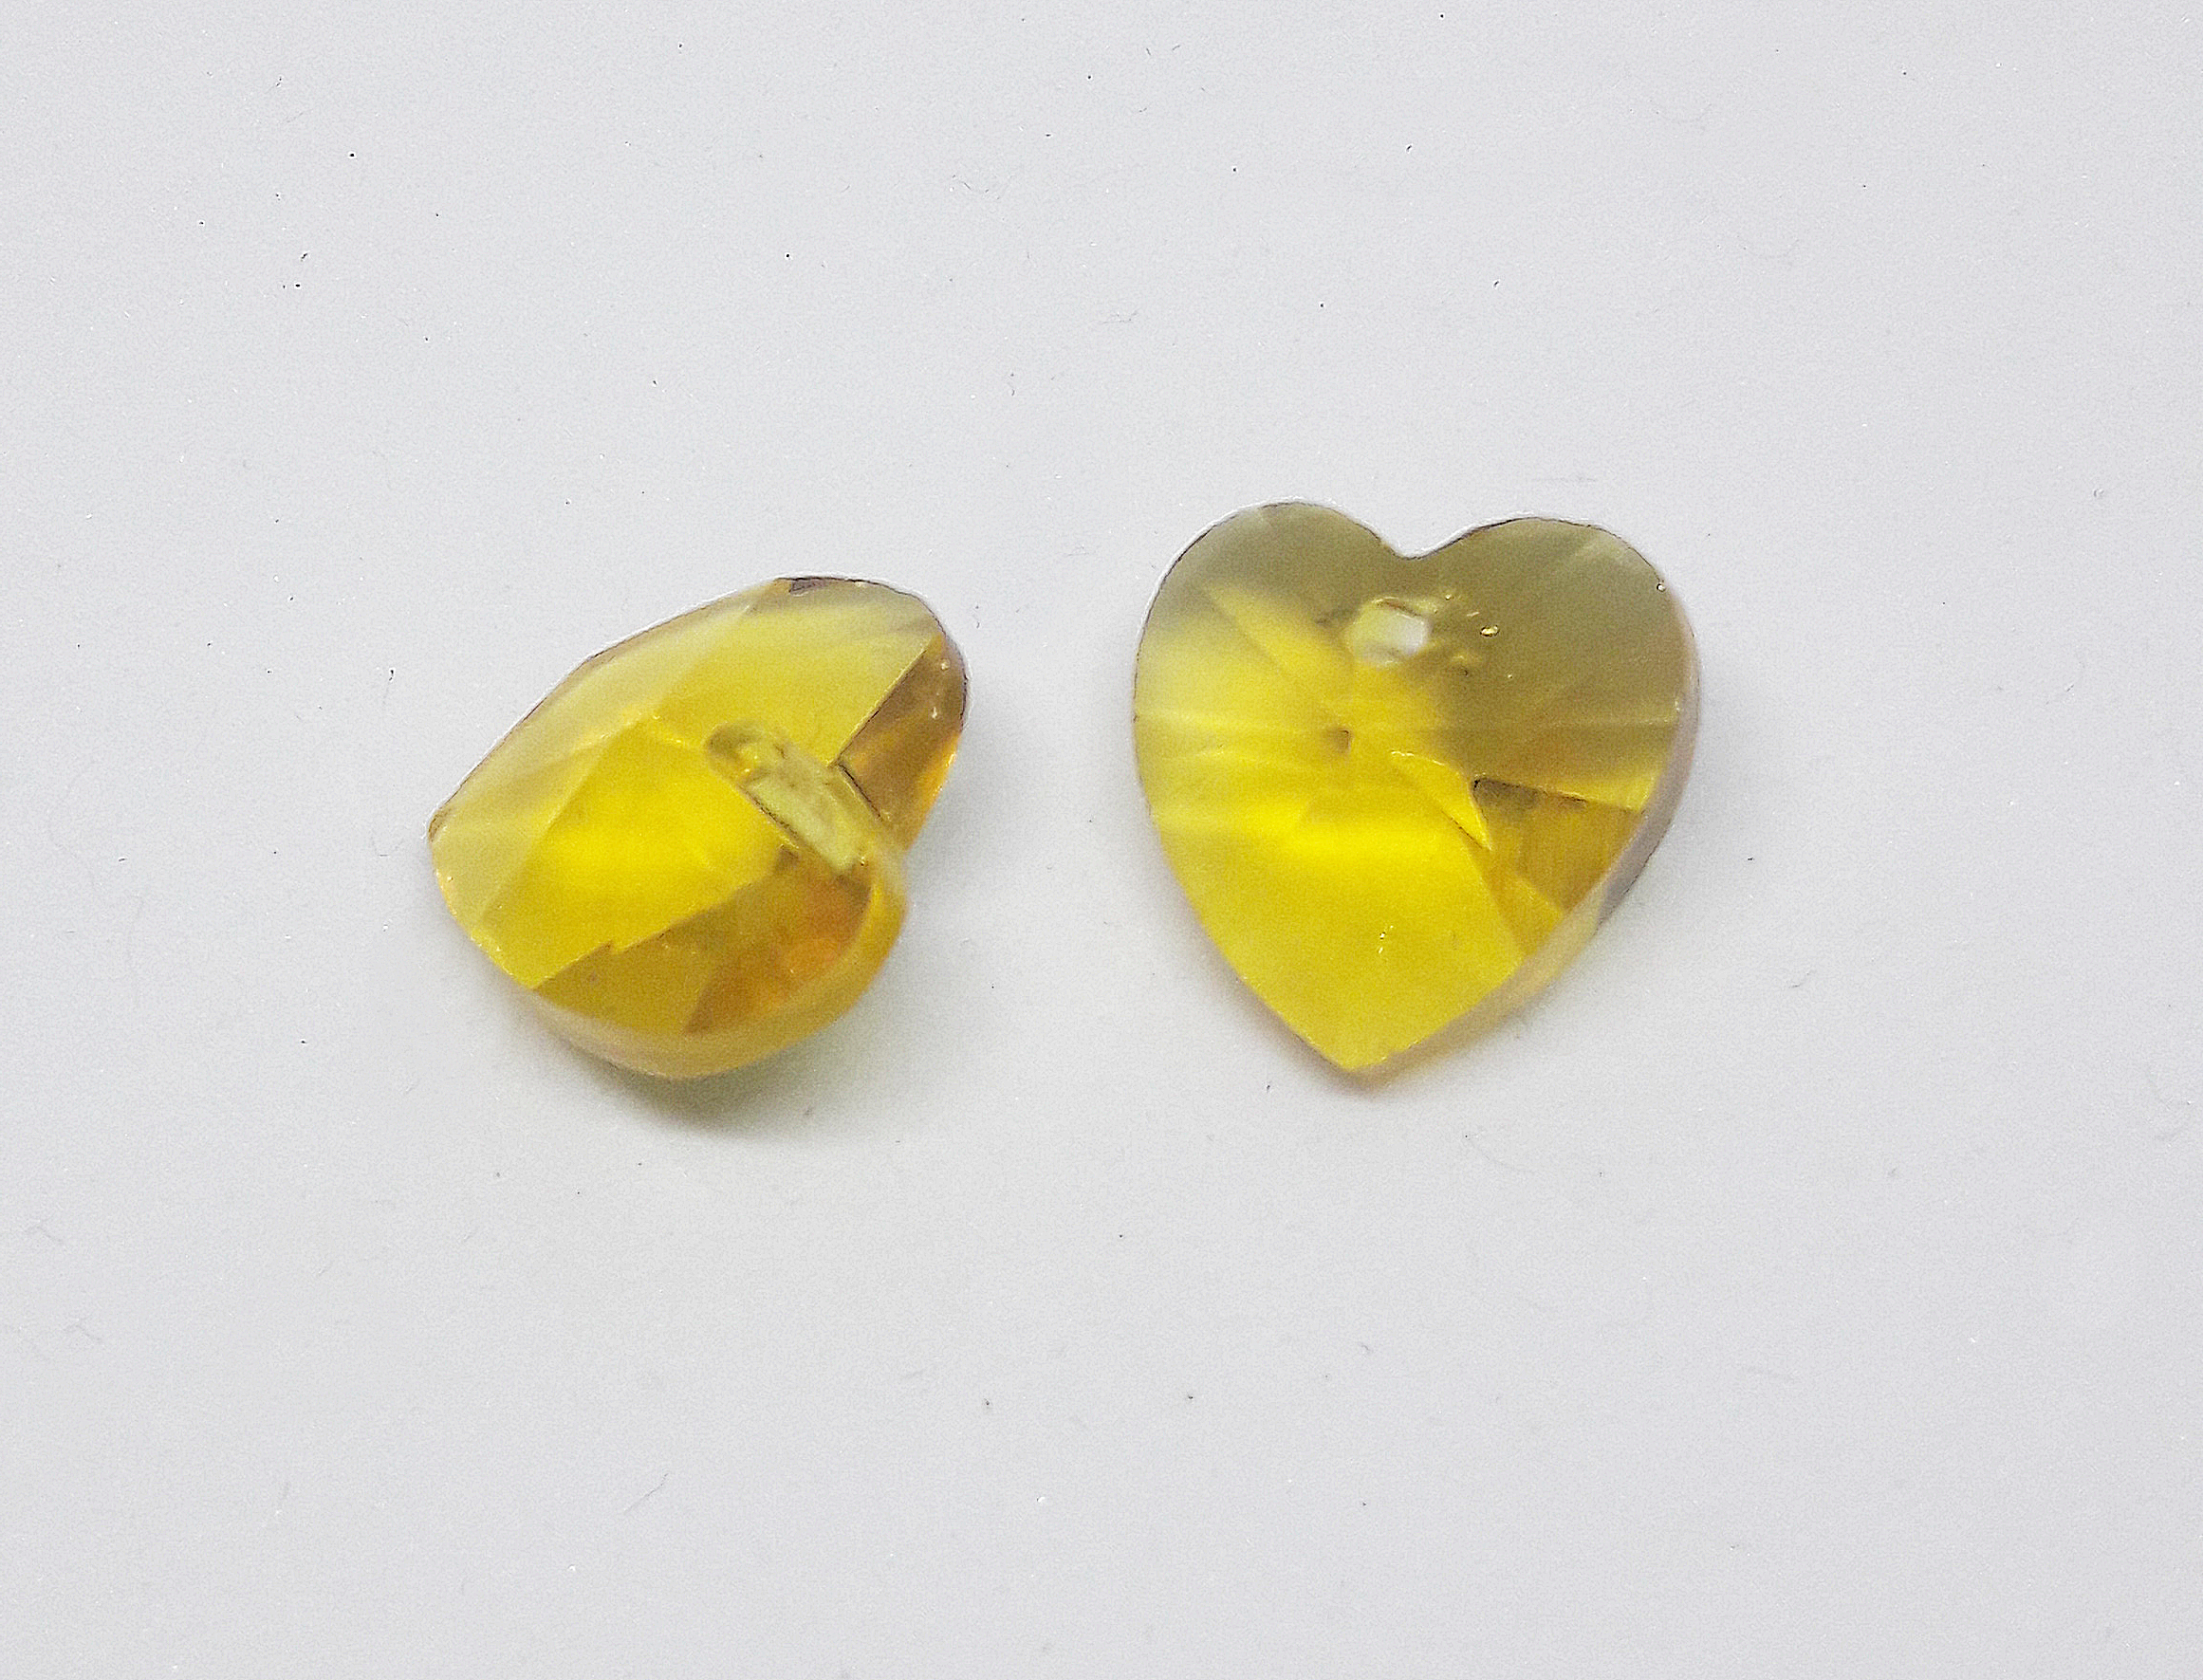 Sárga szív, üveg medál, 14x14 mm